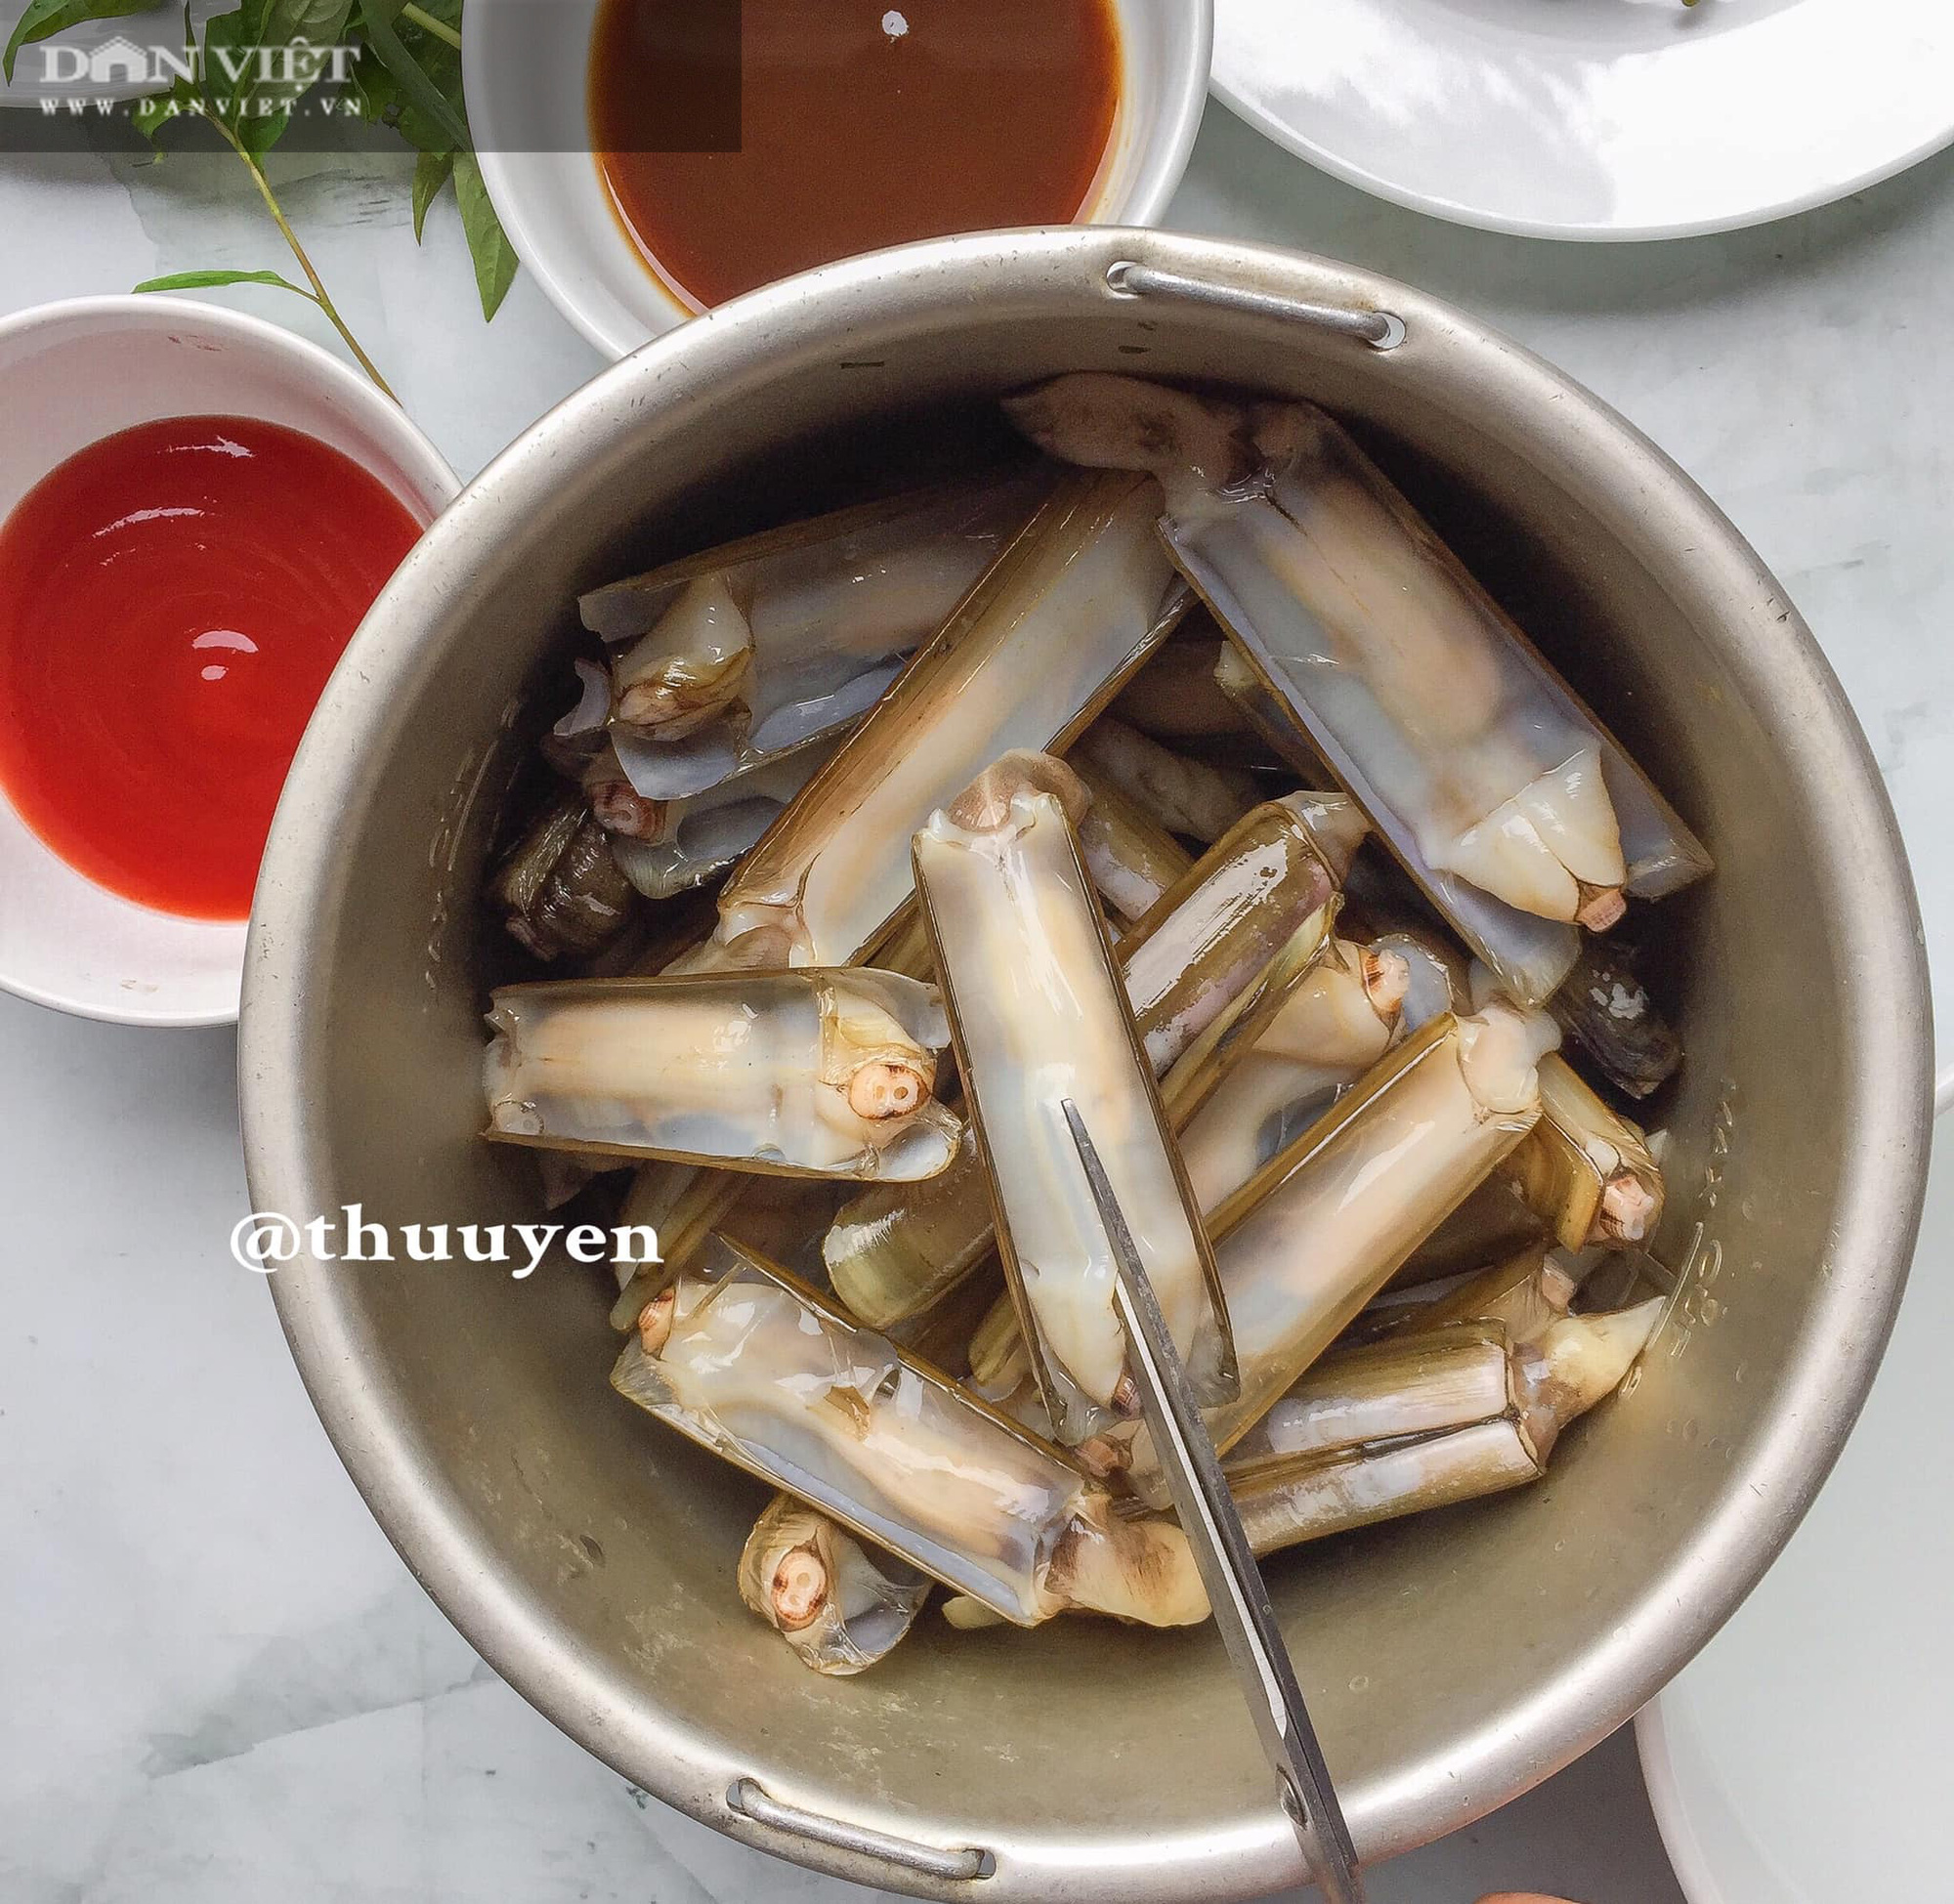 Ốc móng tay xào me là một món ăn không thể thiếu trong bữa ăn của người Việt. Với bí quyết đúng điệu, bạn sẽ tạo ra một món ăn thơm ngon, chua ngọt hài hòa. Hãy xem hình ảnh và cảm nhận vị ngon tuyệt của món ăn này.